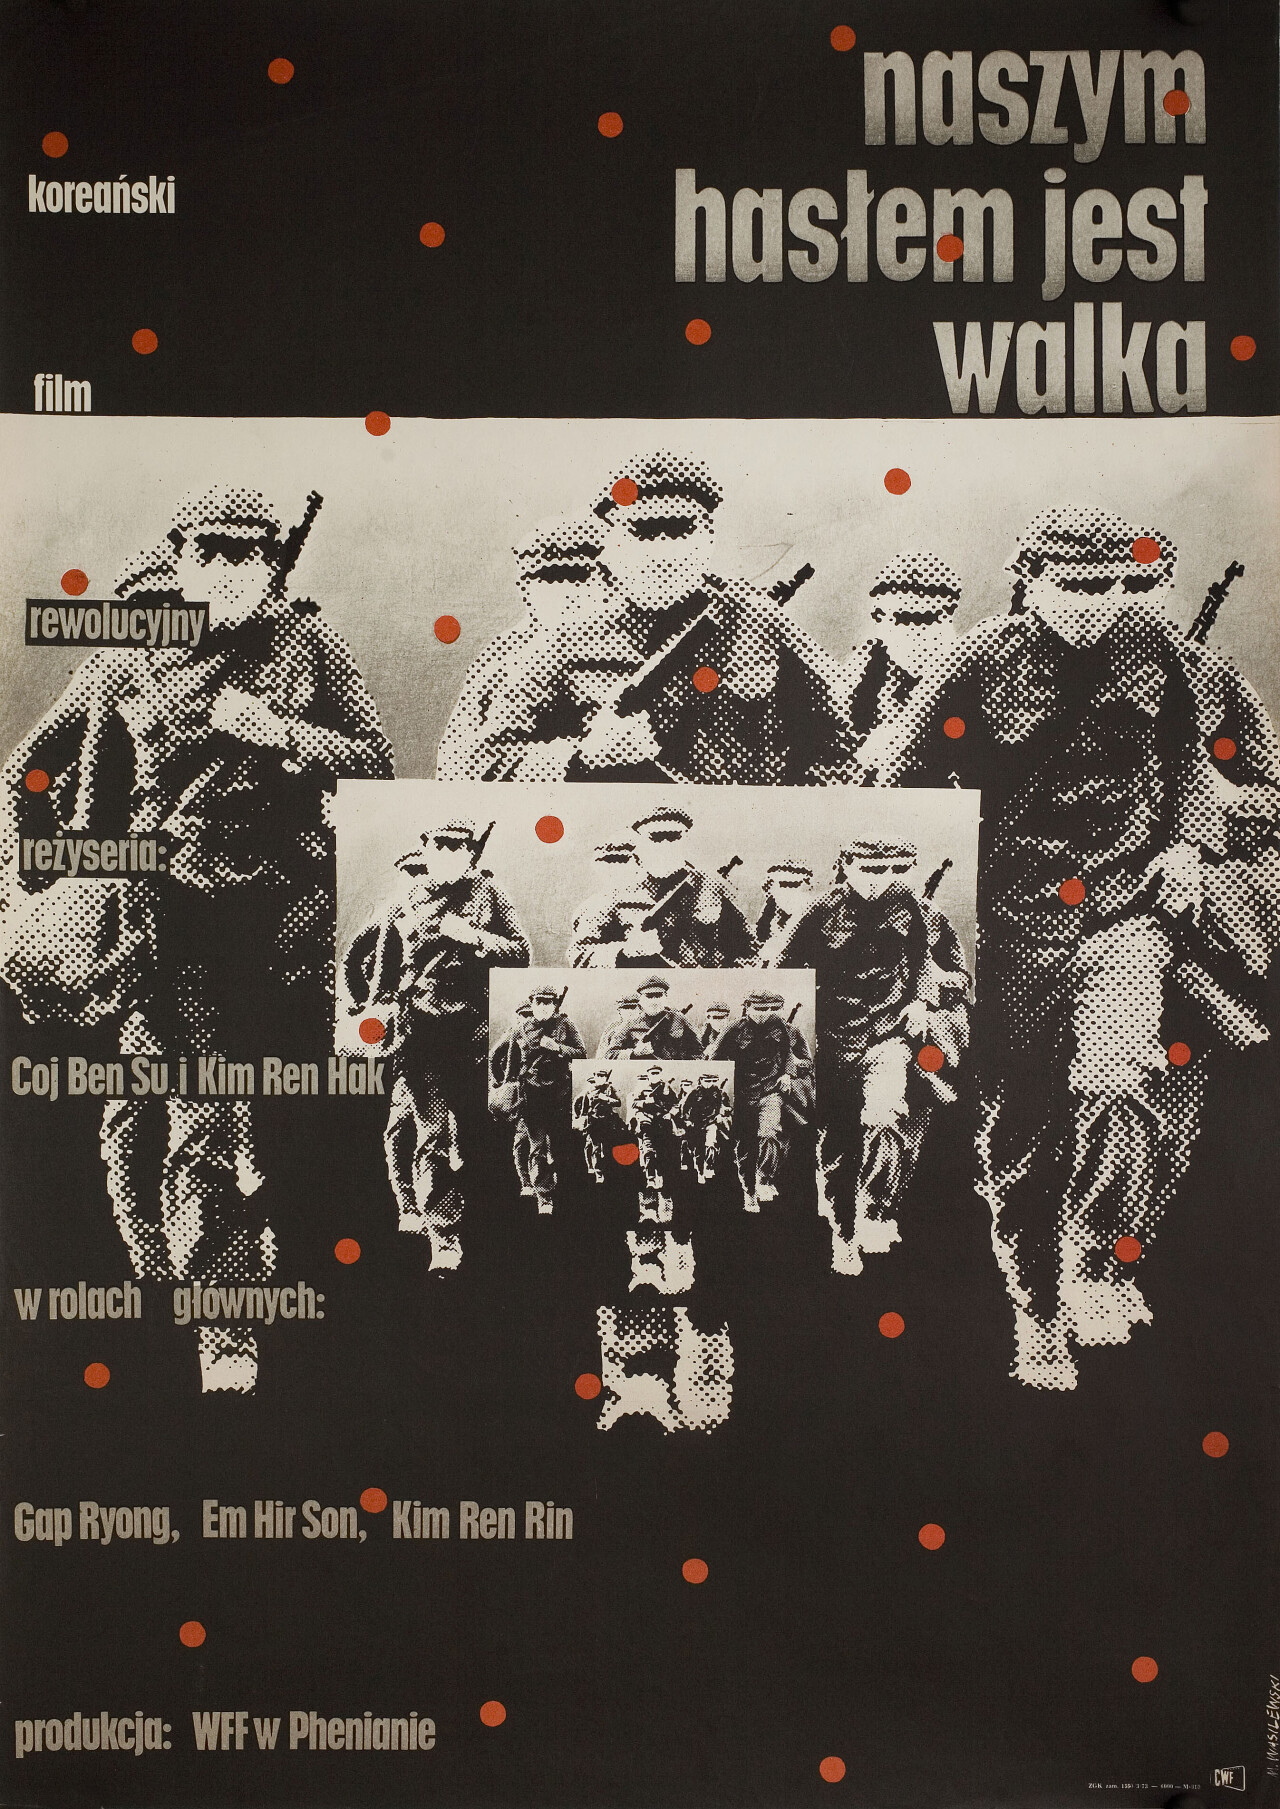 Наш Лозунг - борьба (Naszym Haslem Jest Walka, 1973), режиссёр Кодж Бен Су, польский постер к фильму, автор Мечислав Василевский (графический дизайн, 1973 год)